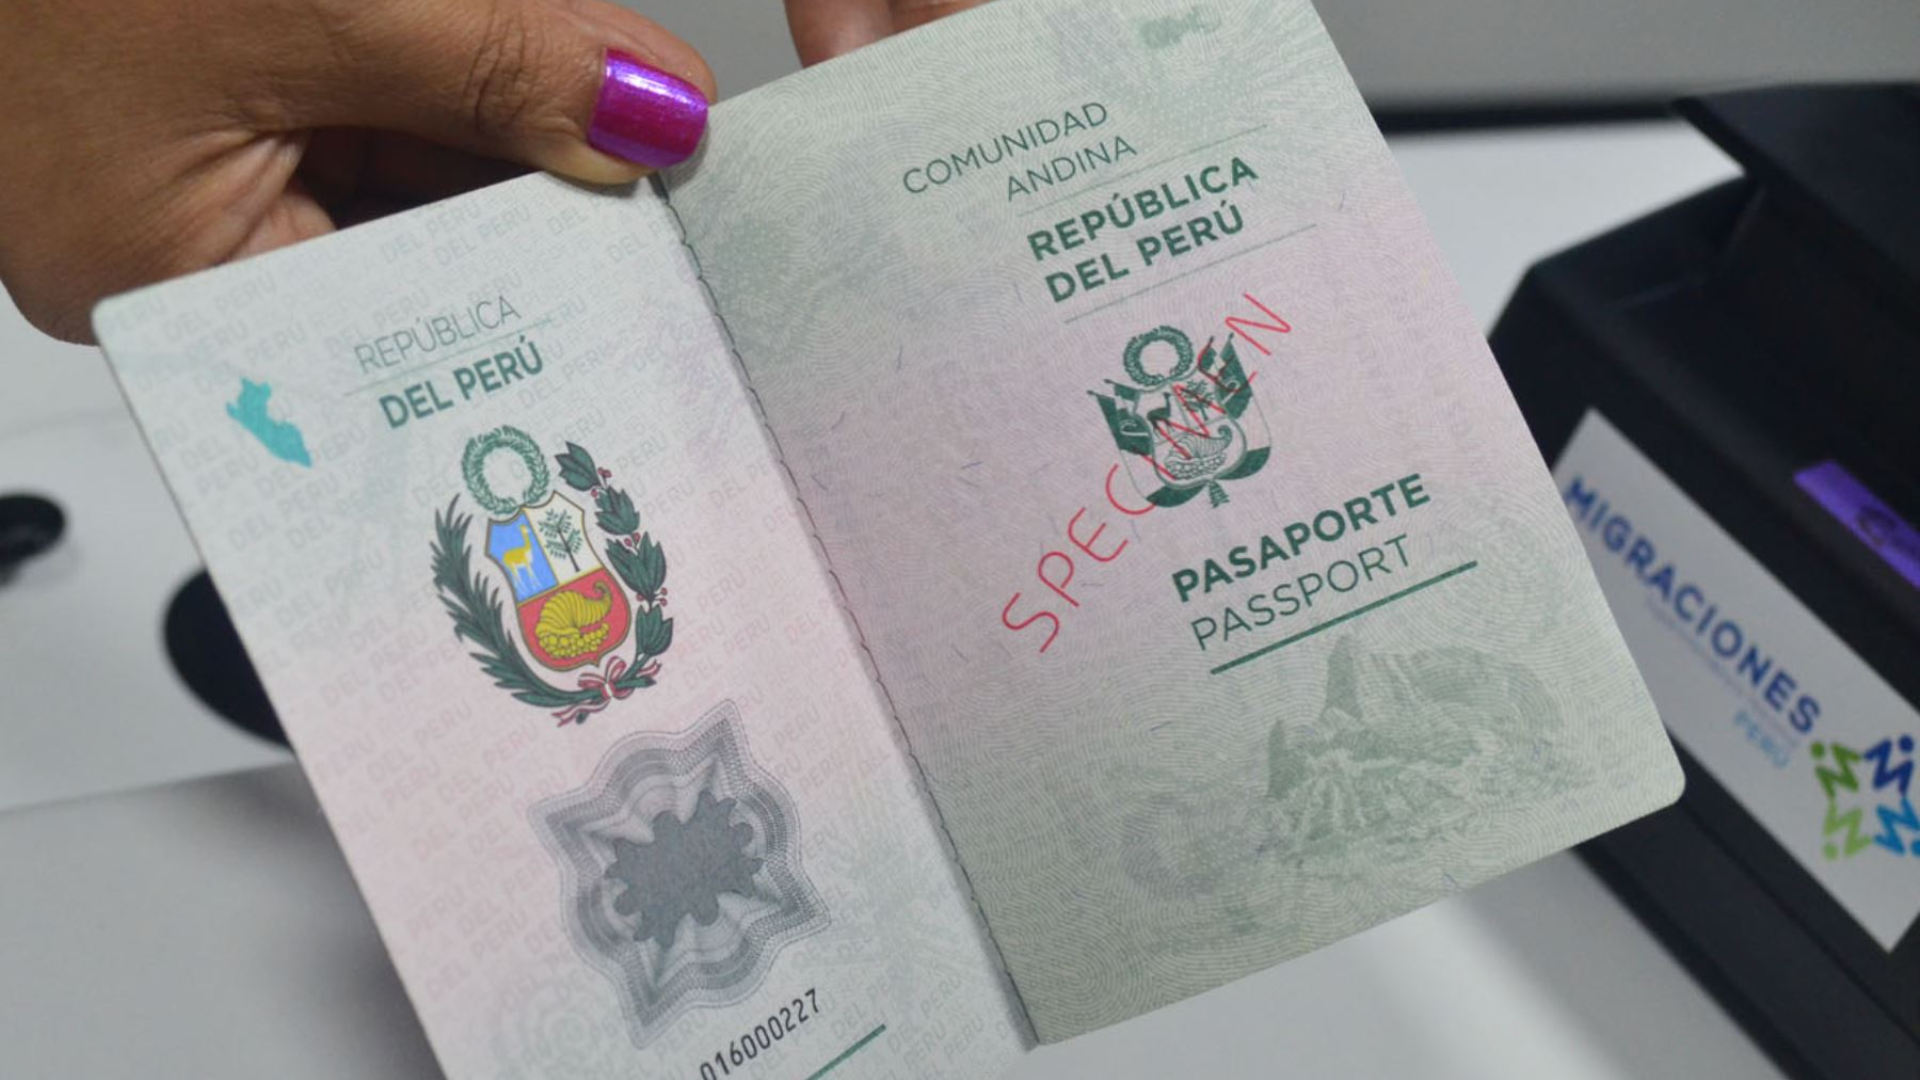 Amplían vigencia de pasaporte electrónico por 10 años
Foto: Andina